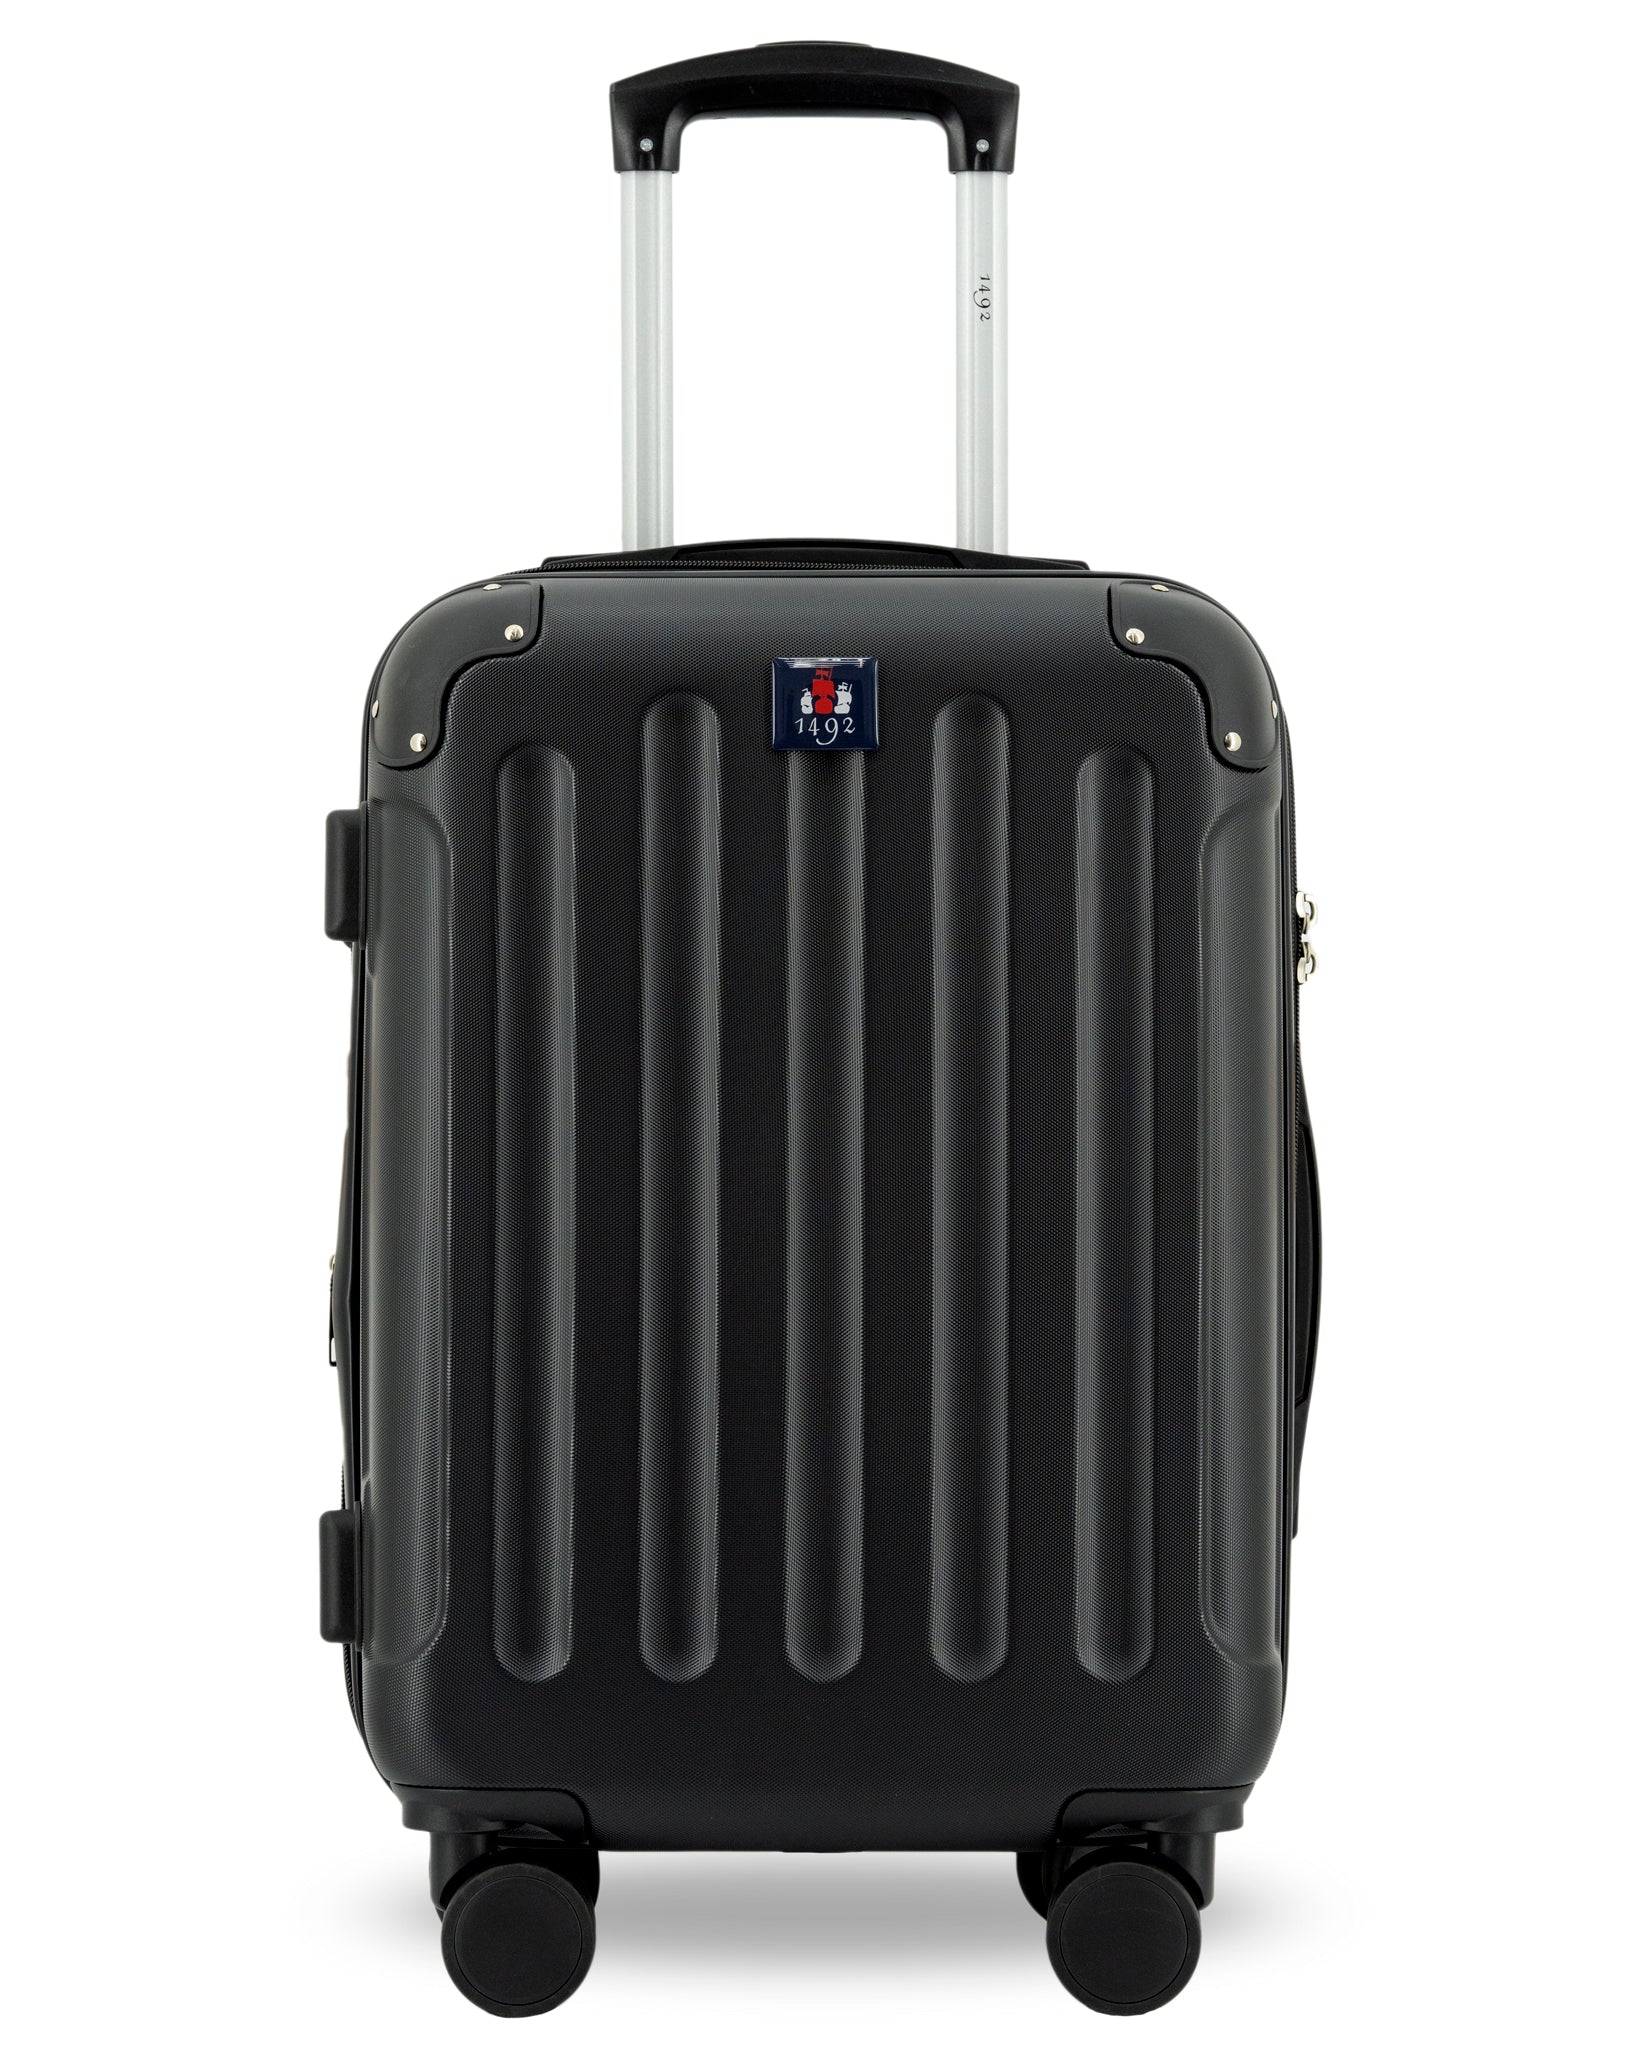 maleta-1492-con-rueda-para-viajes-1